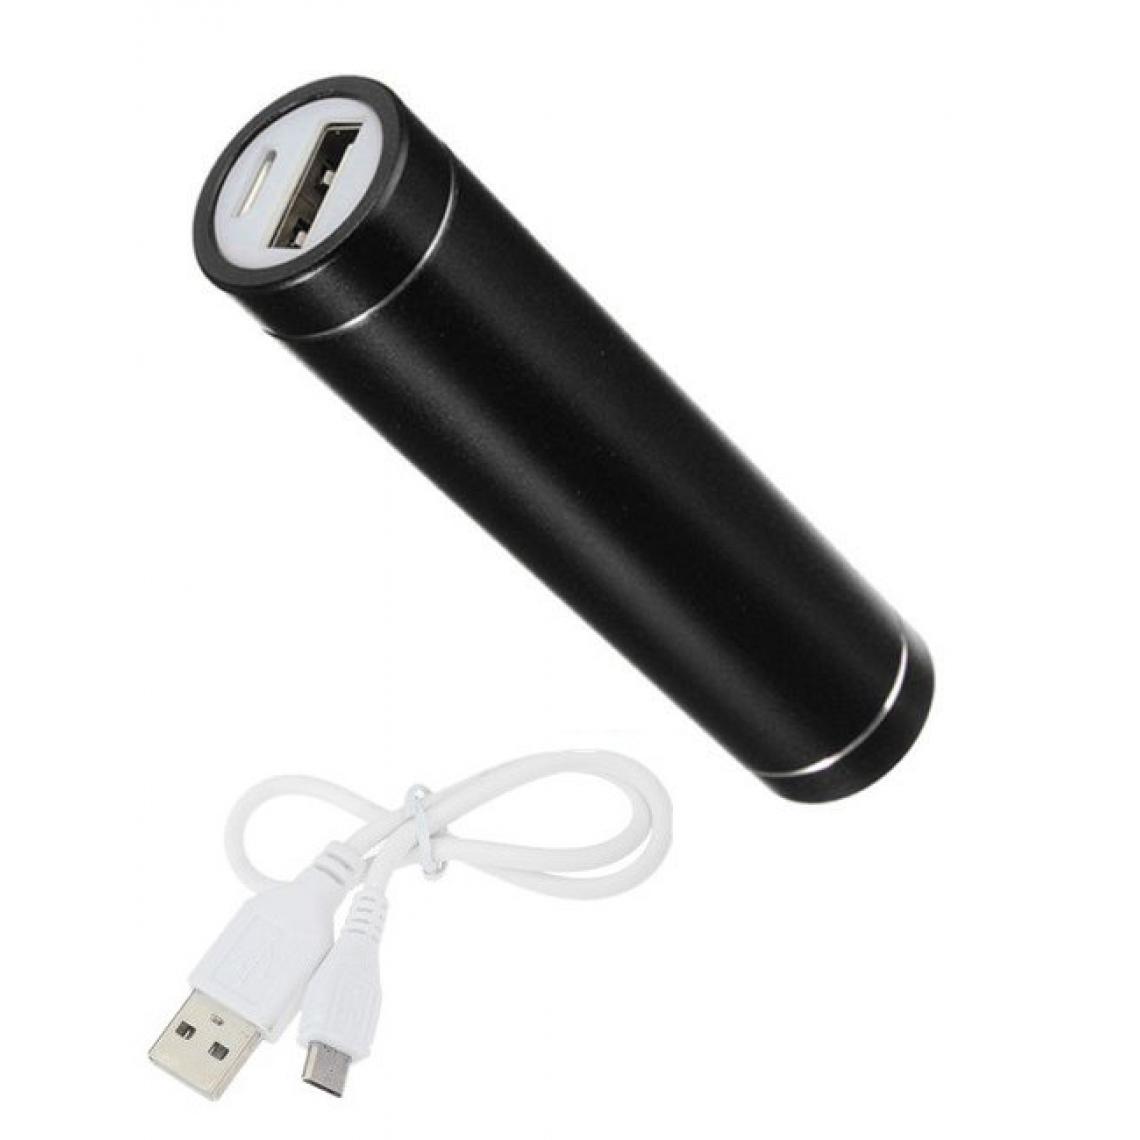 Shot - Batterie Chargeur Externe pour HUAWEI Y5 2019 Power Bank 2600mAh avec Cable USB/Mirco USB Secours Telephon (NOIR) - Chargeur secteur téléphone